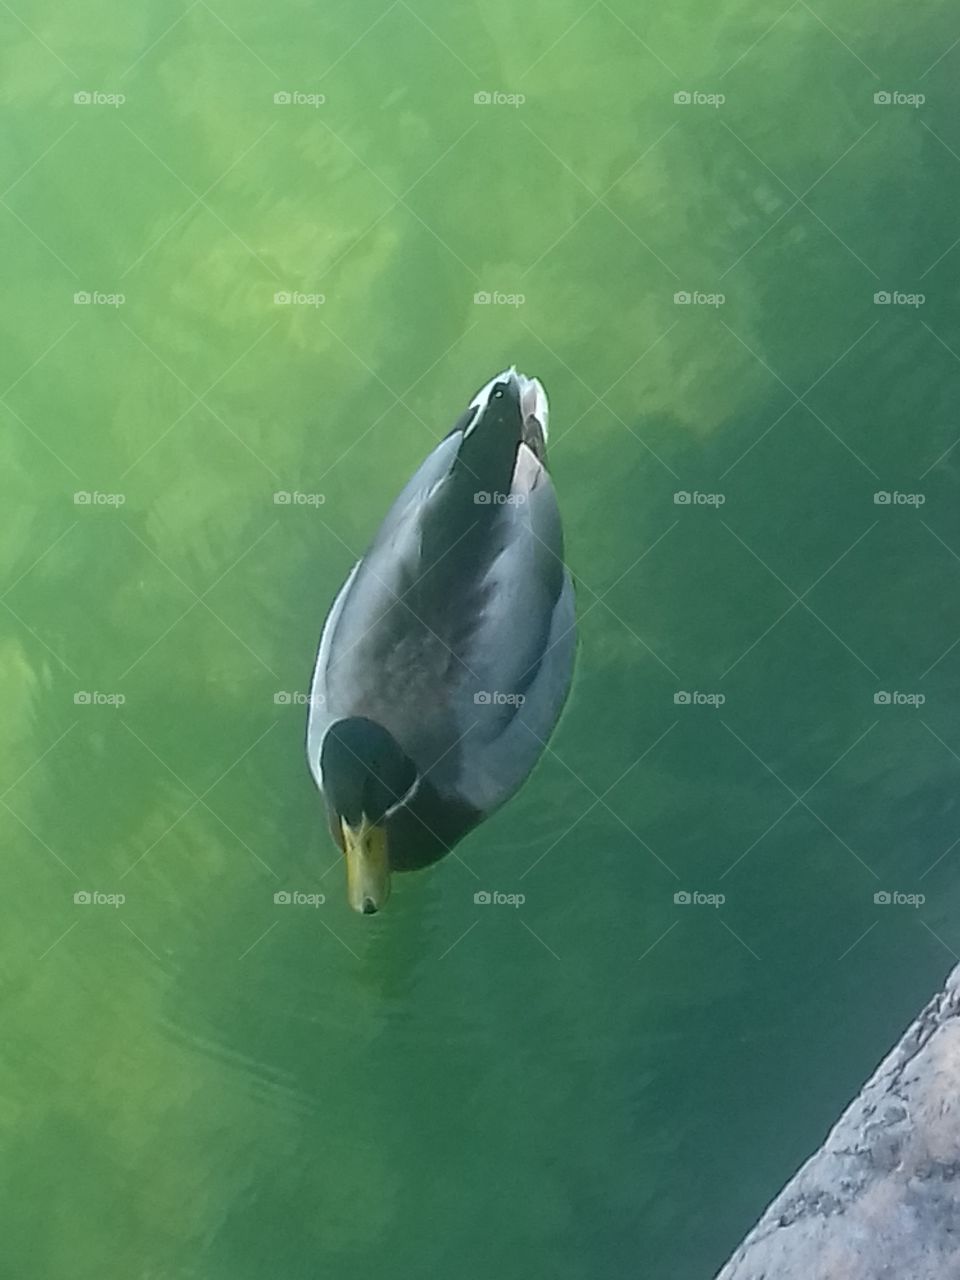 duck in garda lake